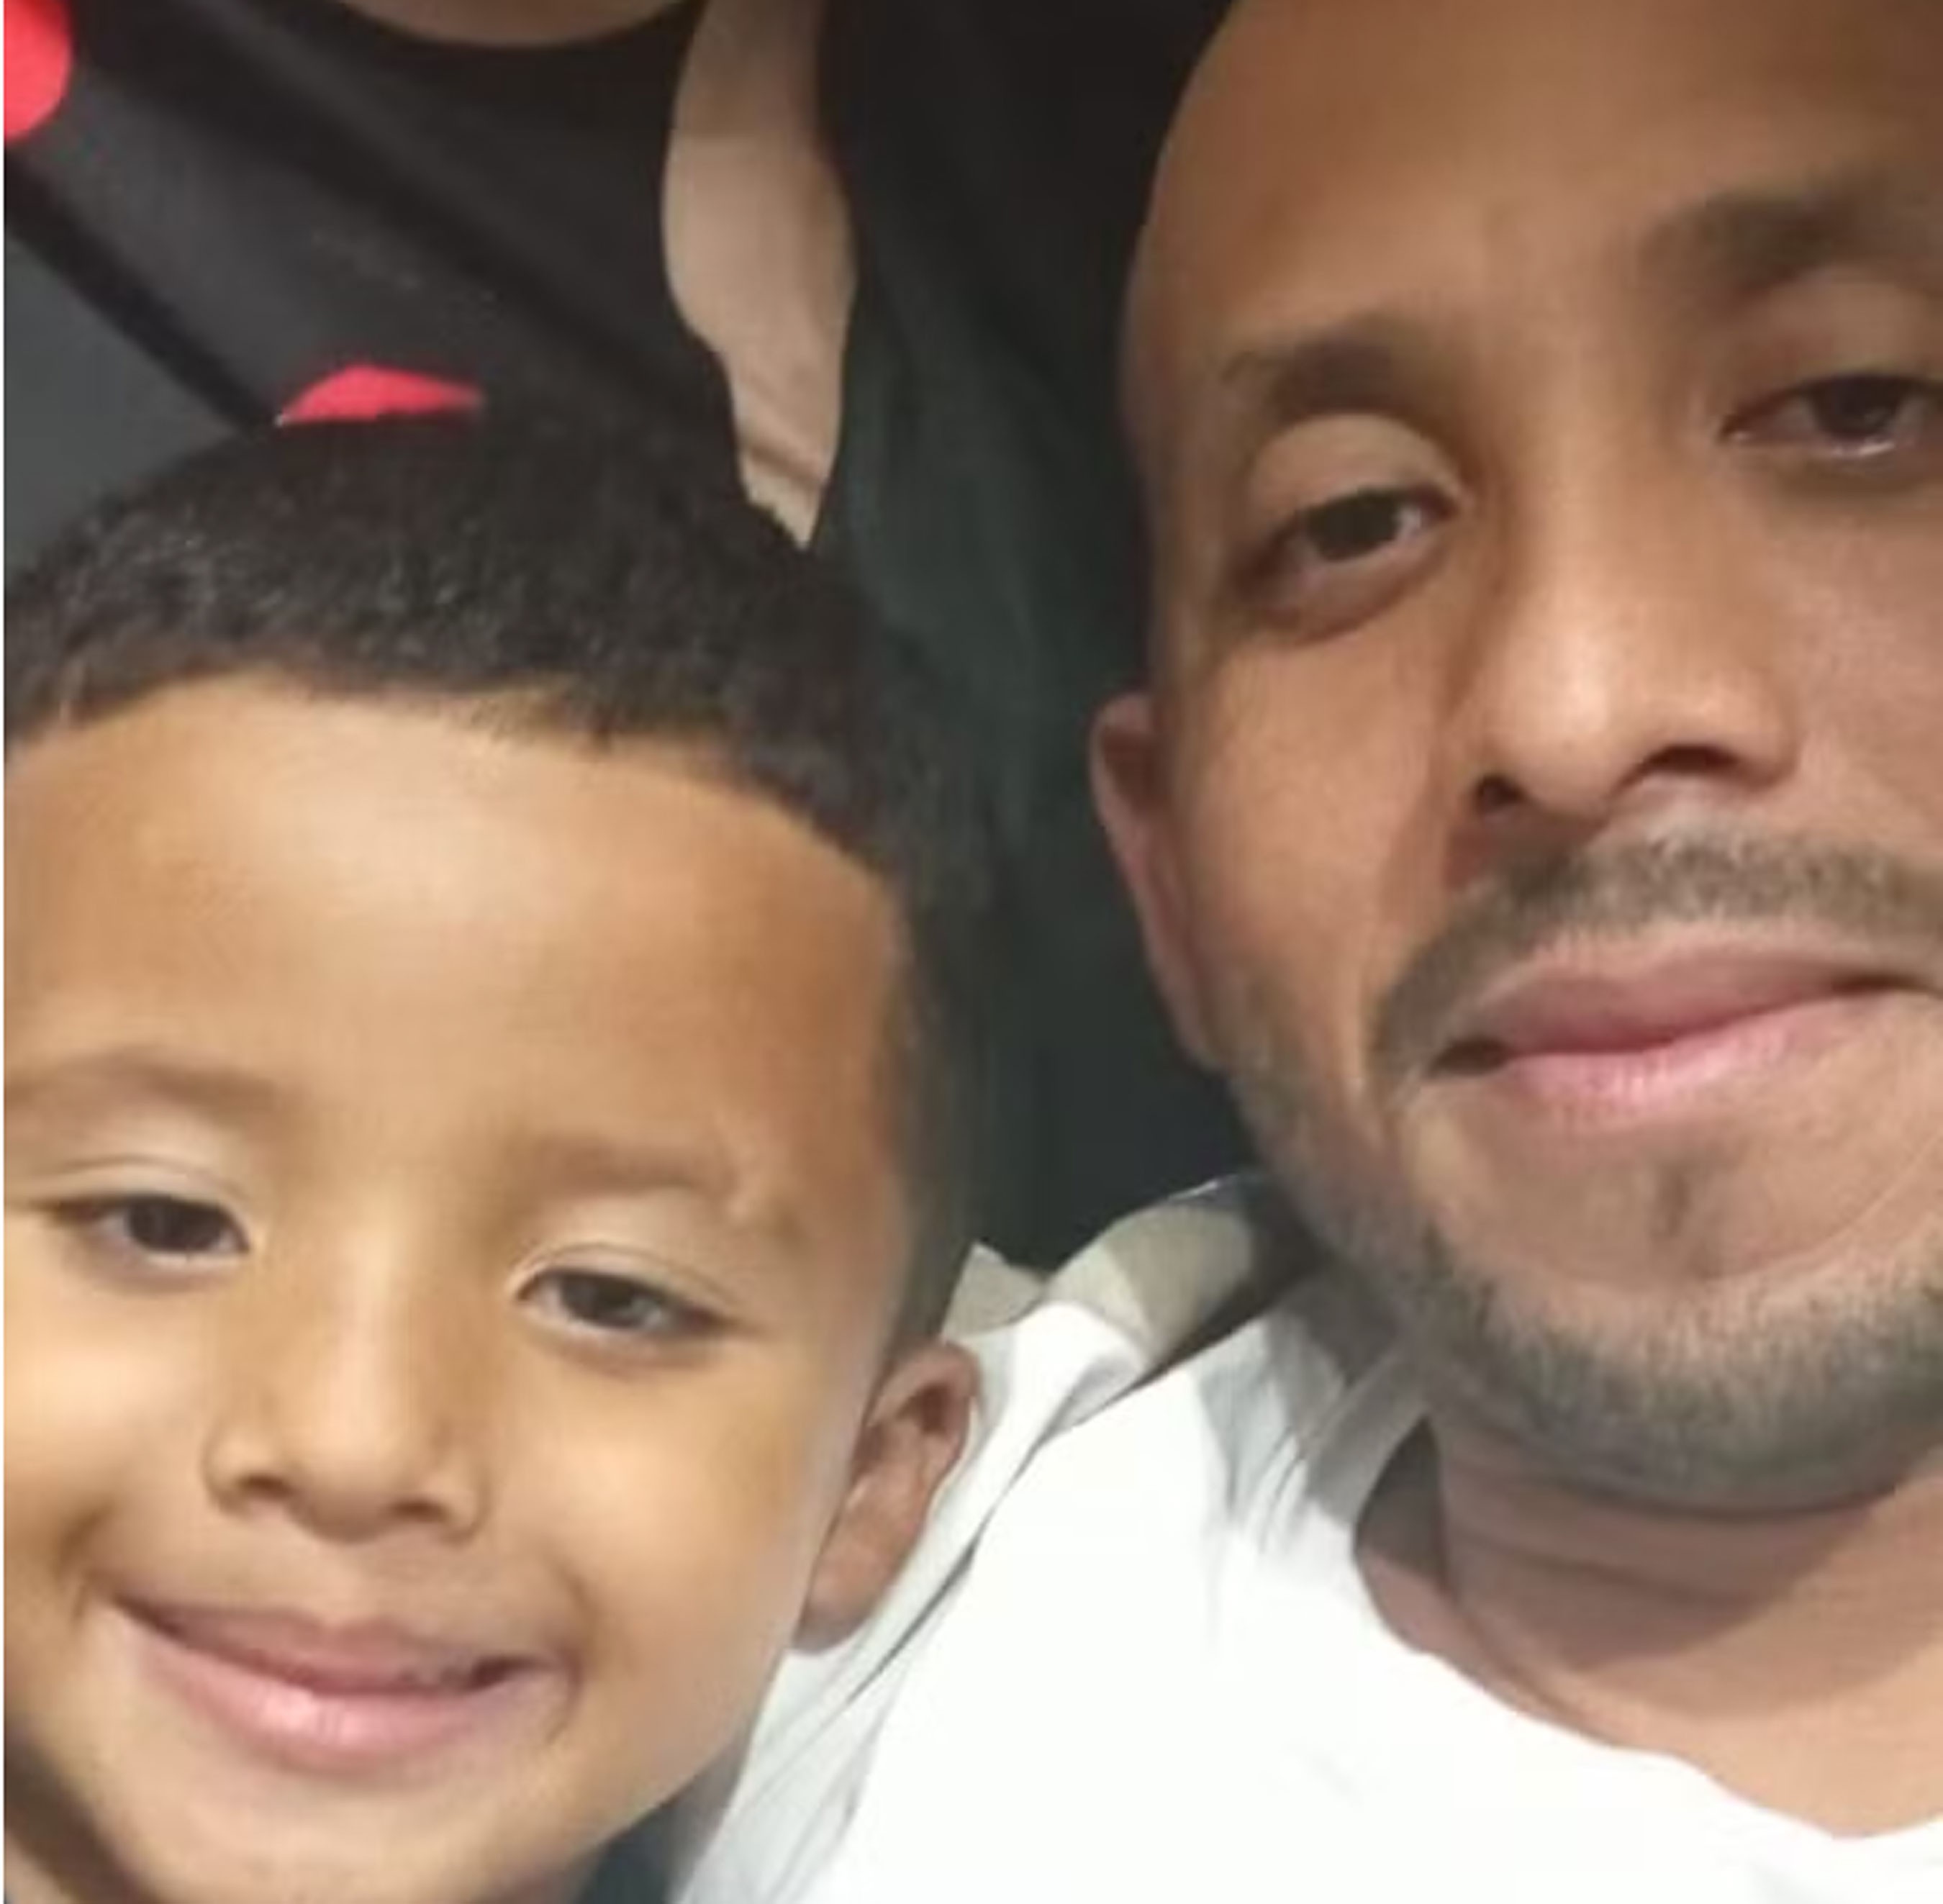 'Era meu filho amado, meu parceirão', diz pai de menino de 4 anos achado morto em piscina 